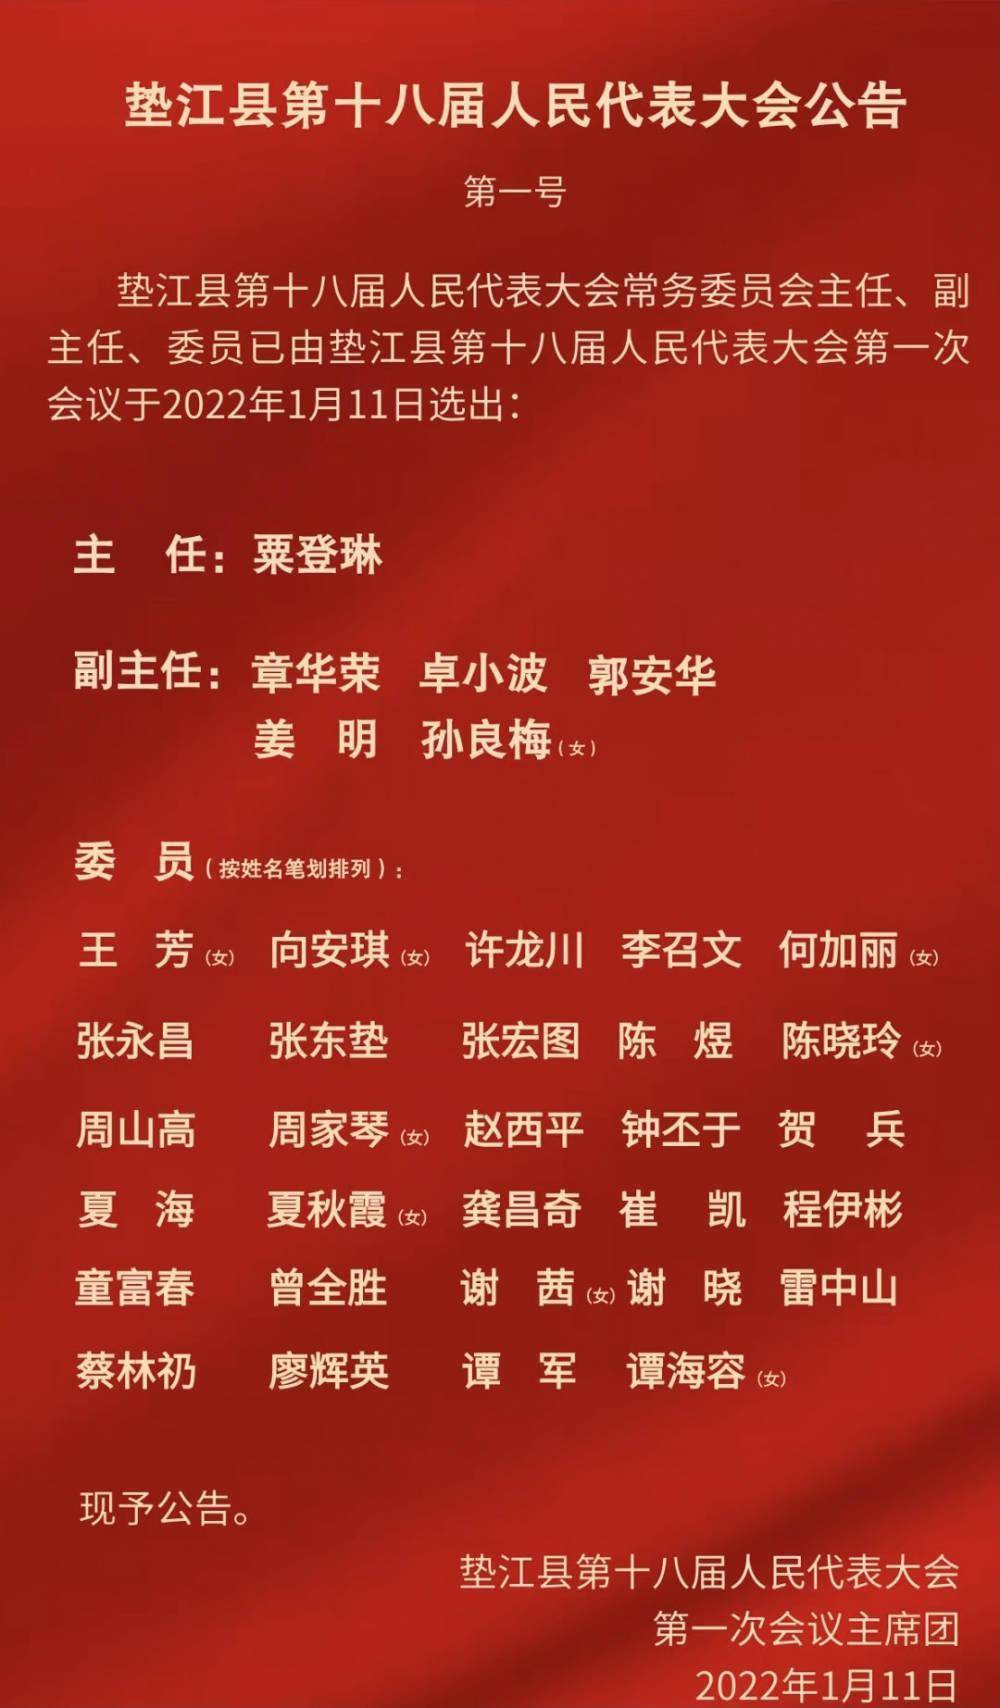 粟登琳当选垫江县人大常委会主任张涛当选县长